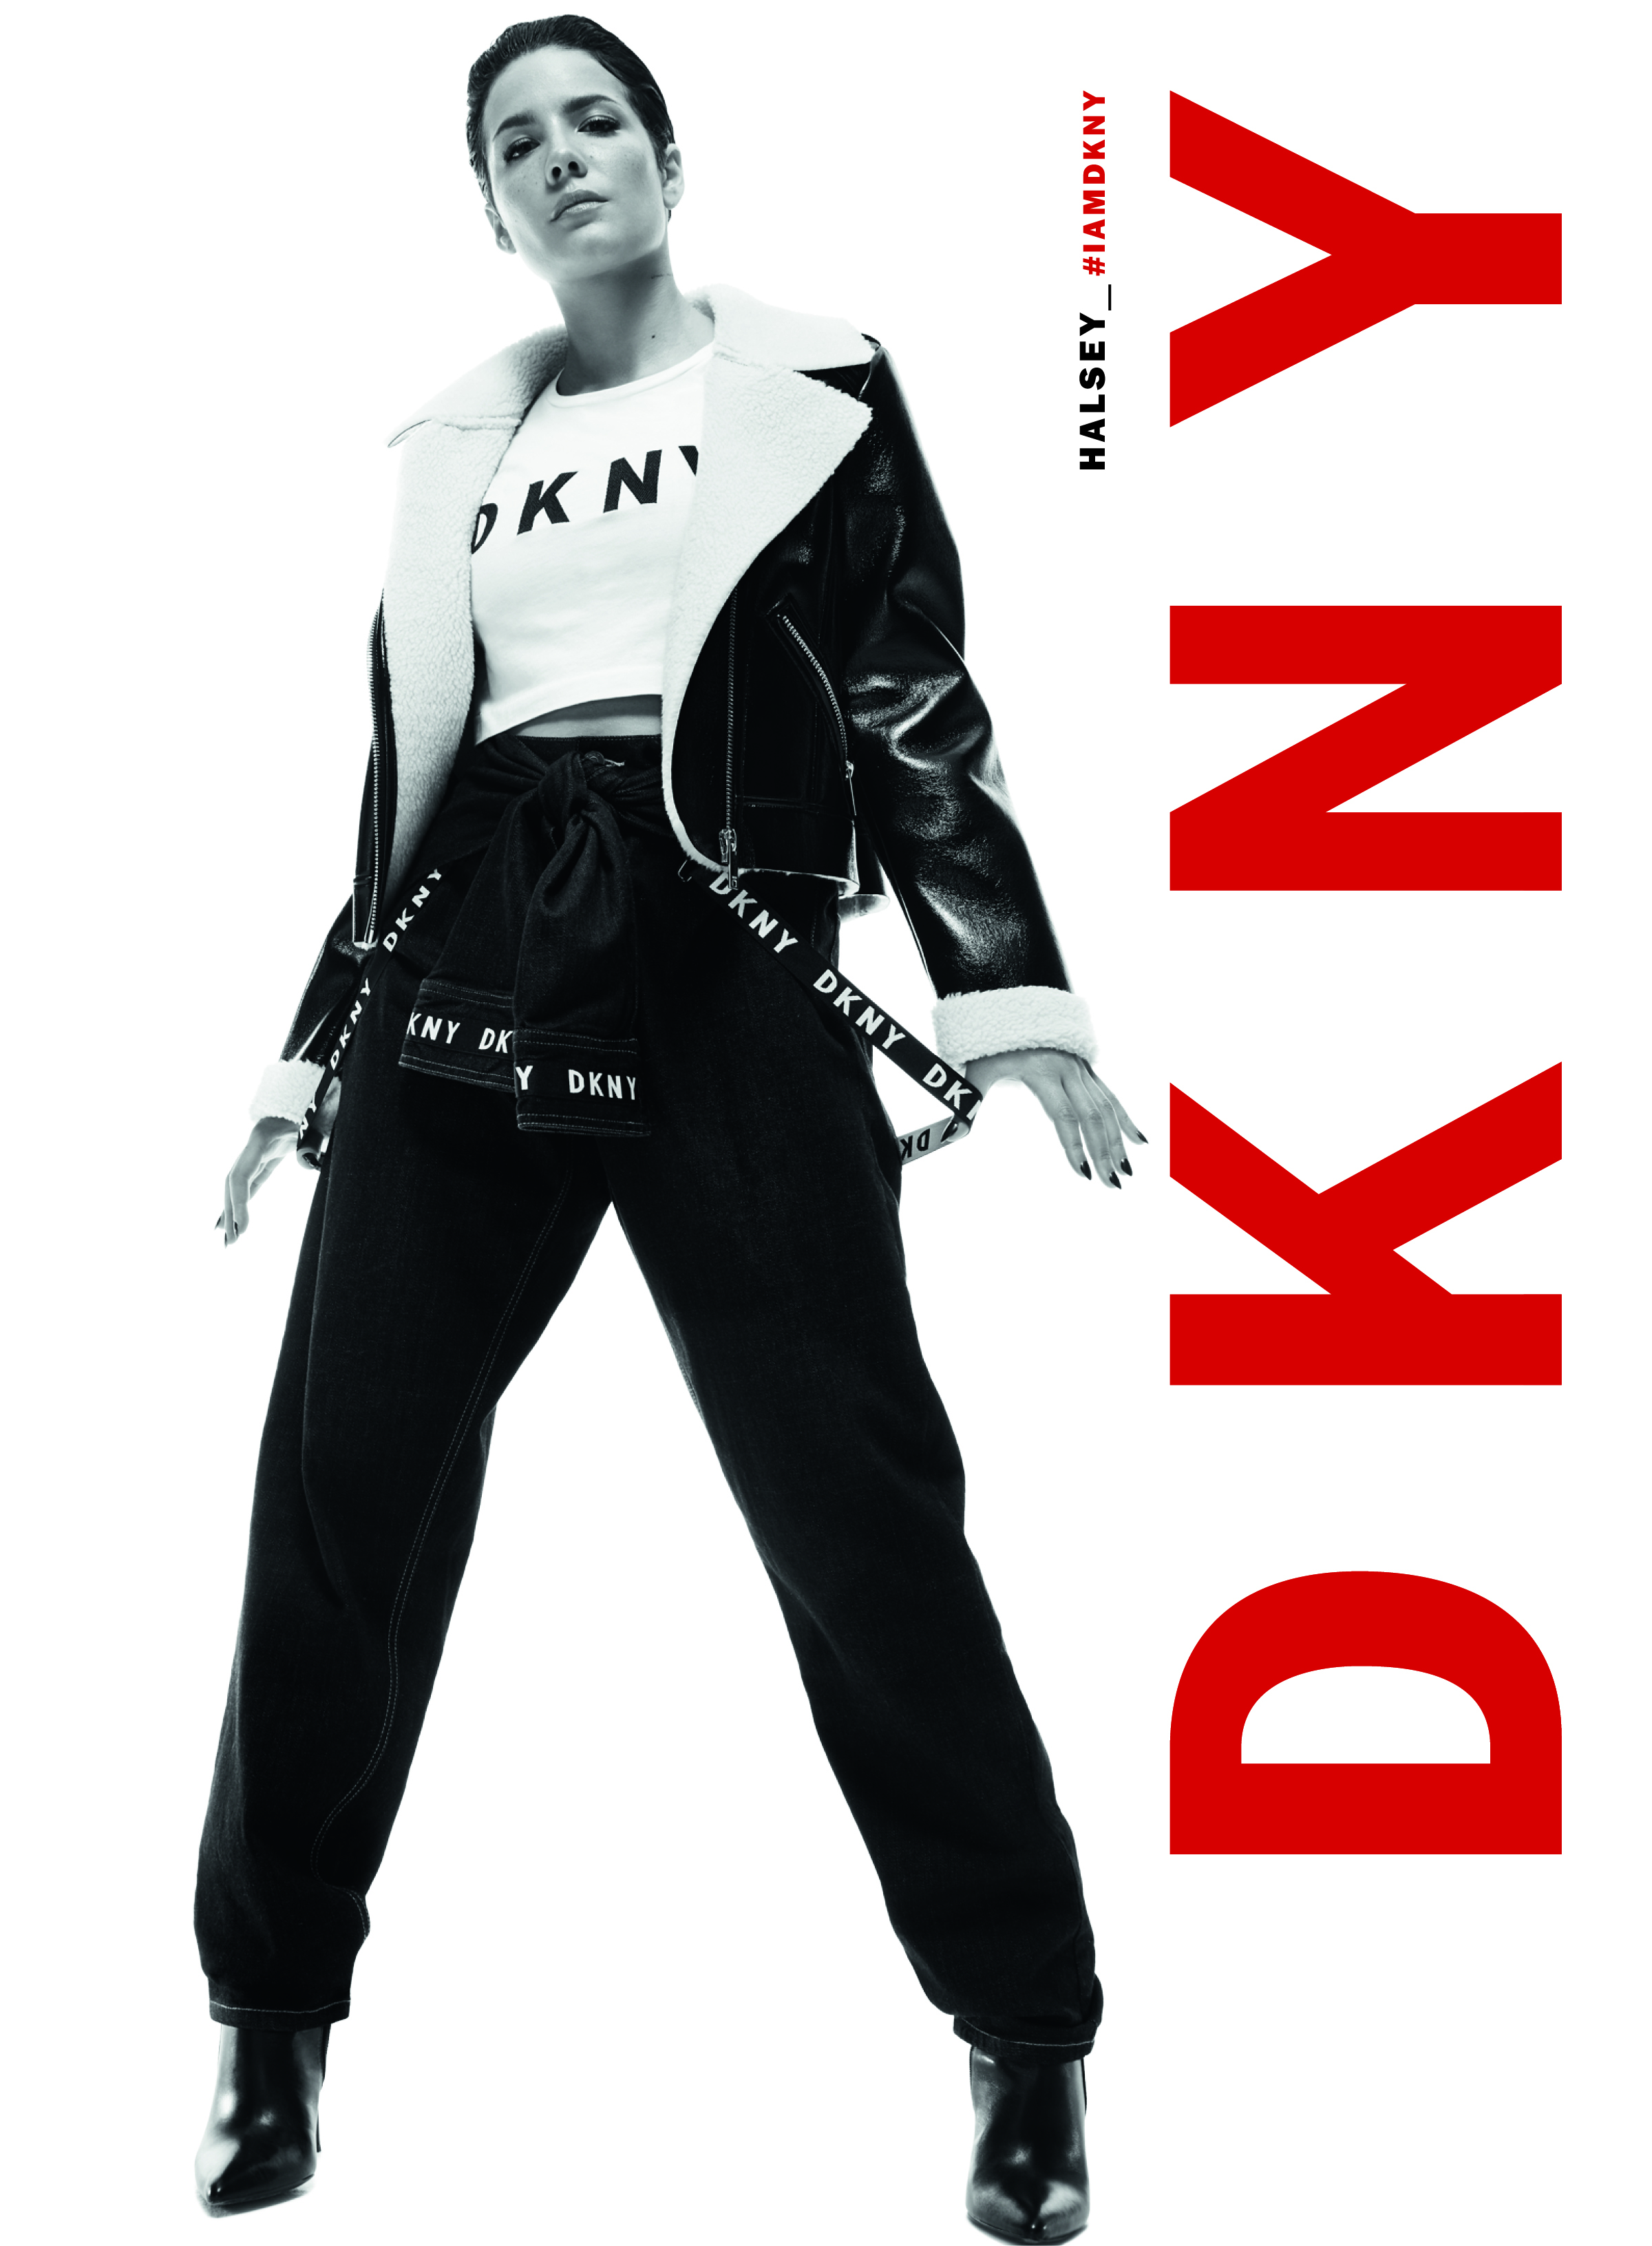 DKNY - Alyasra Fashion